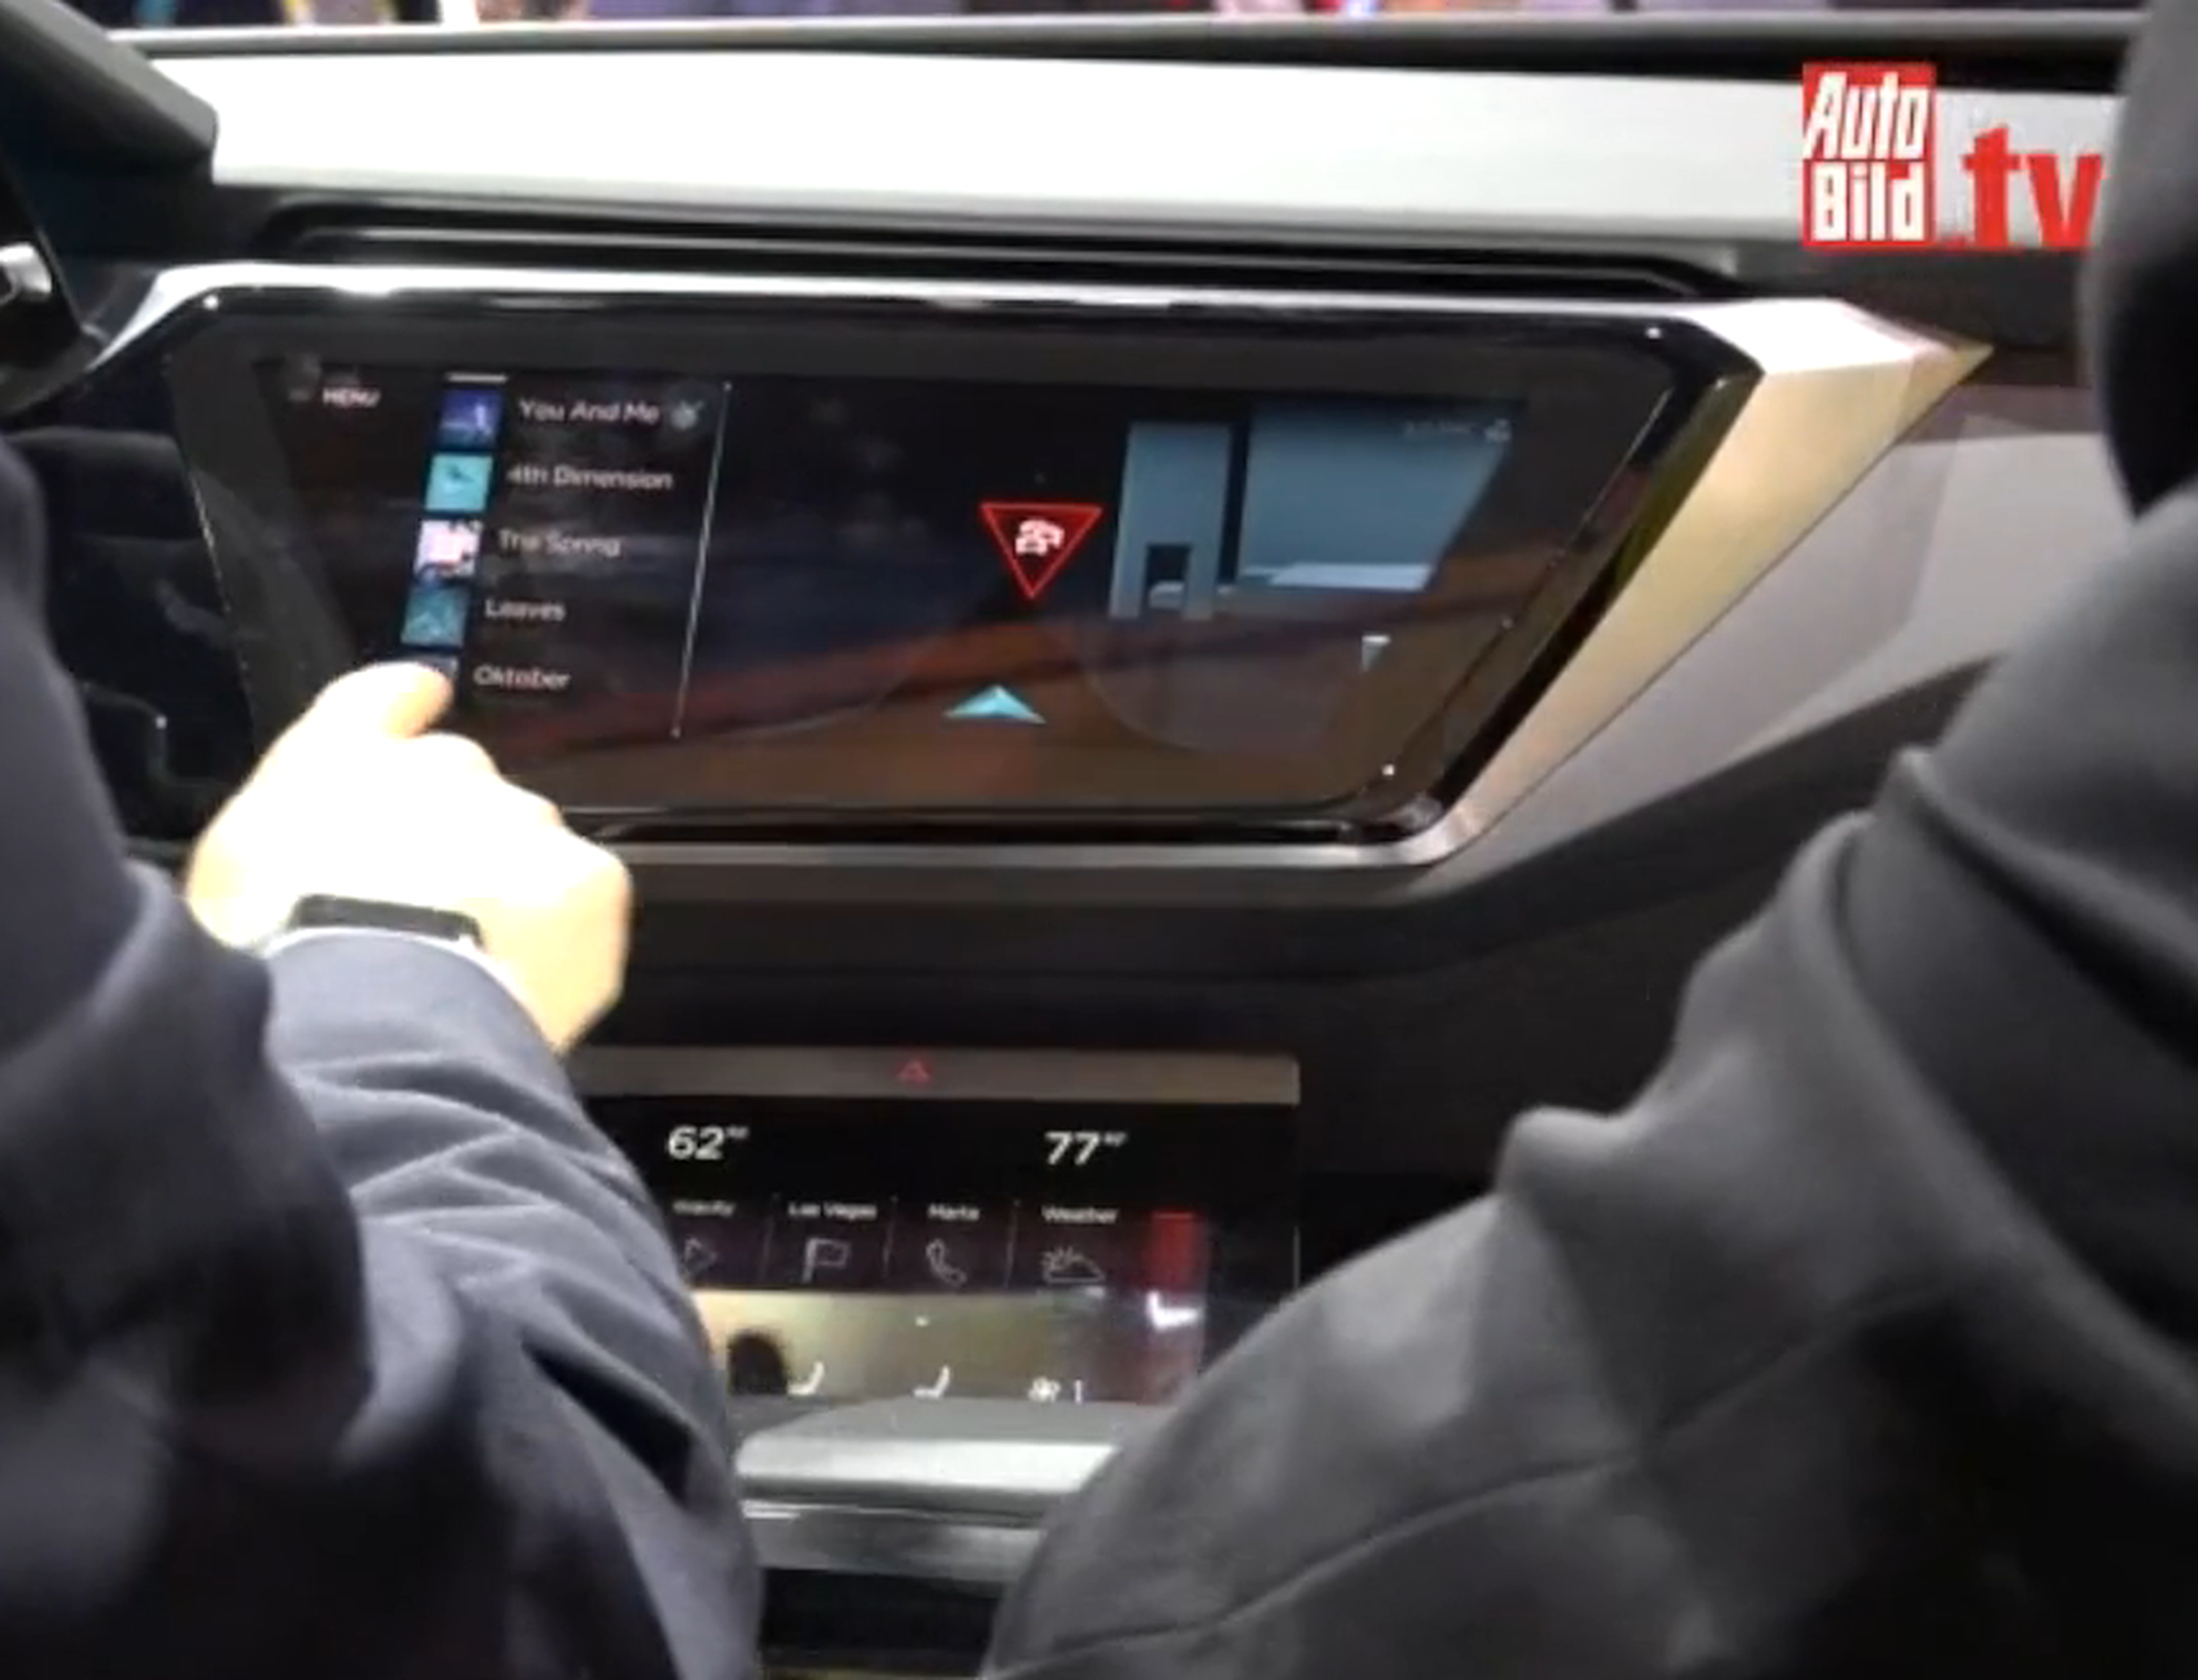 Todo digital e inteligente, así será el cockpit del Audi A8